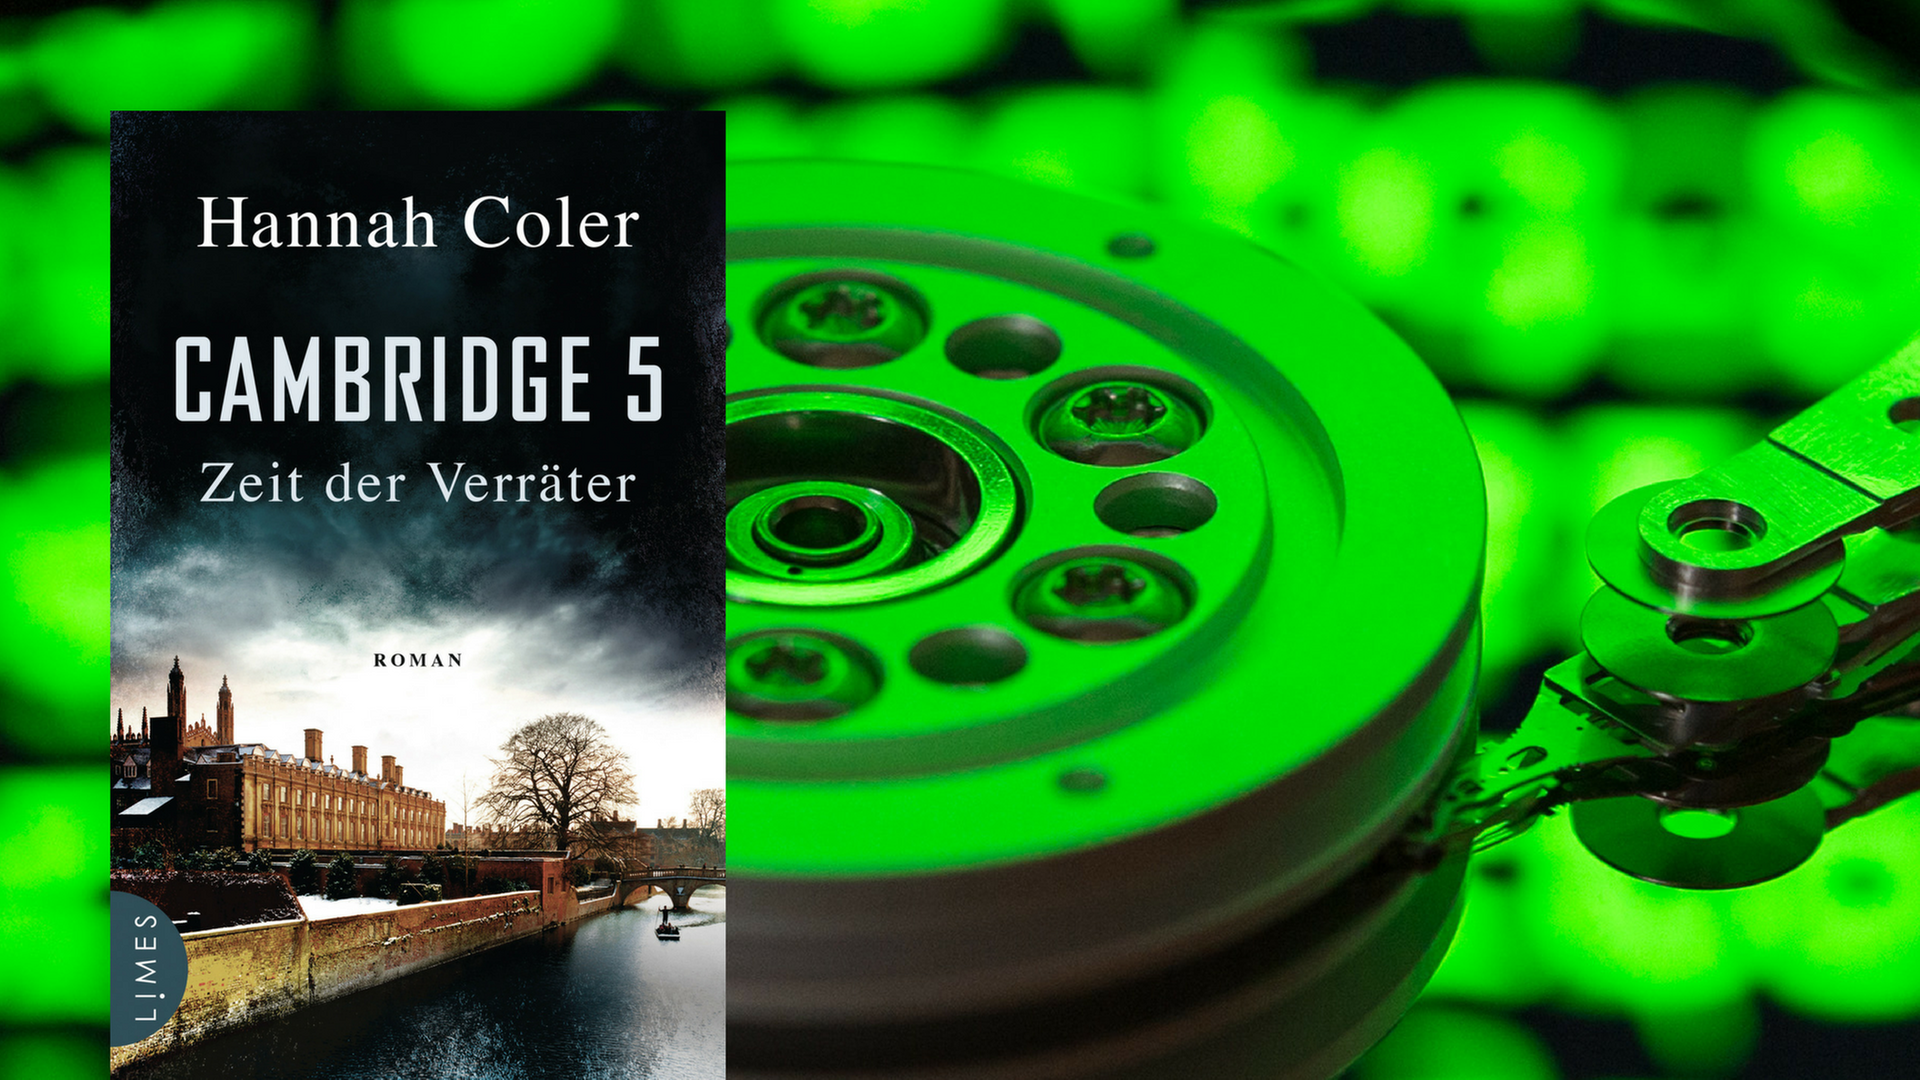 Eine in grün gefärbte, geöffnete Festplatte, im Vordergrund das Cover zum Buch "Cambridge 5" von Hannah Coler